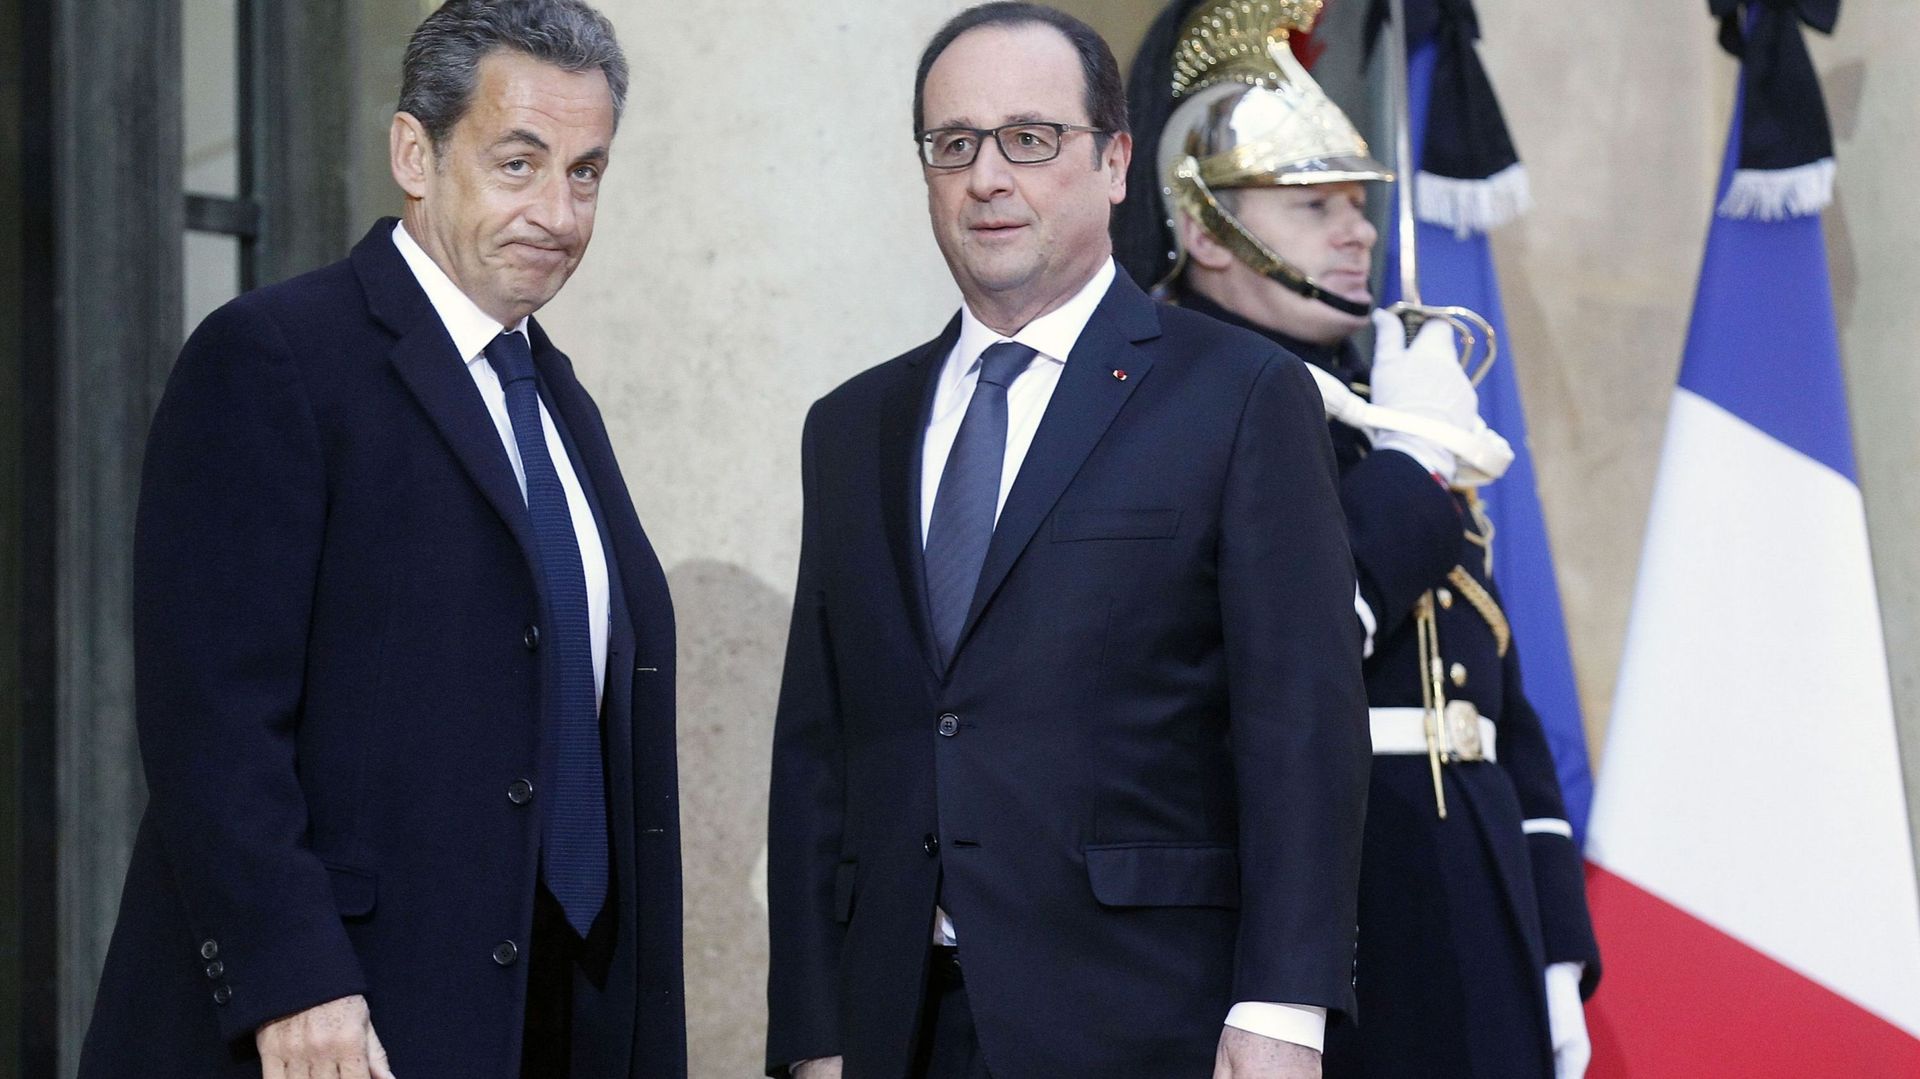 Charlie Hebdo: Hollande, confronté à une crise majeure, prône l'union nationale